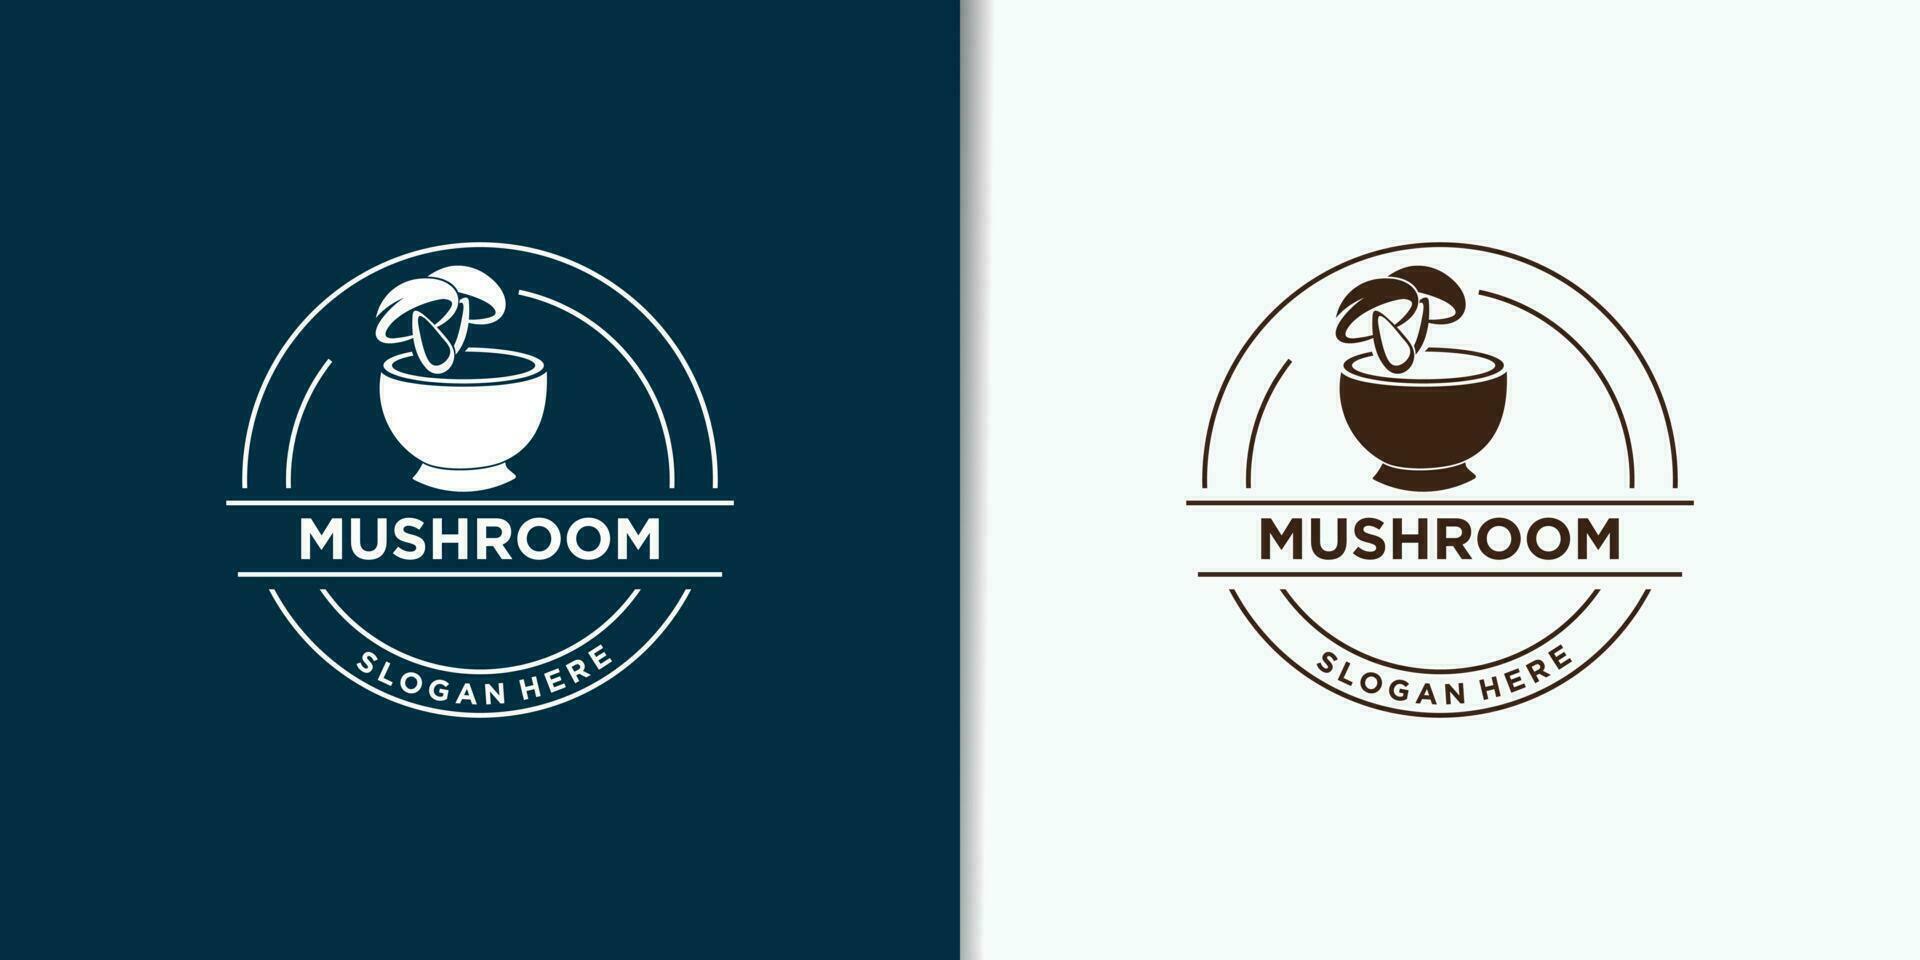 mushroom vintage logo vector, nature logo design vector